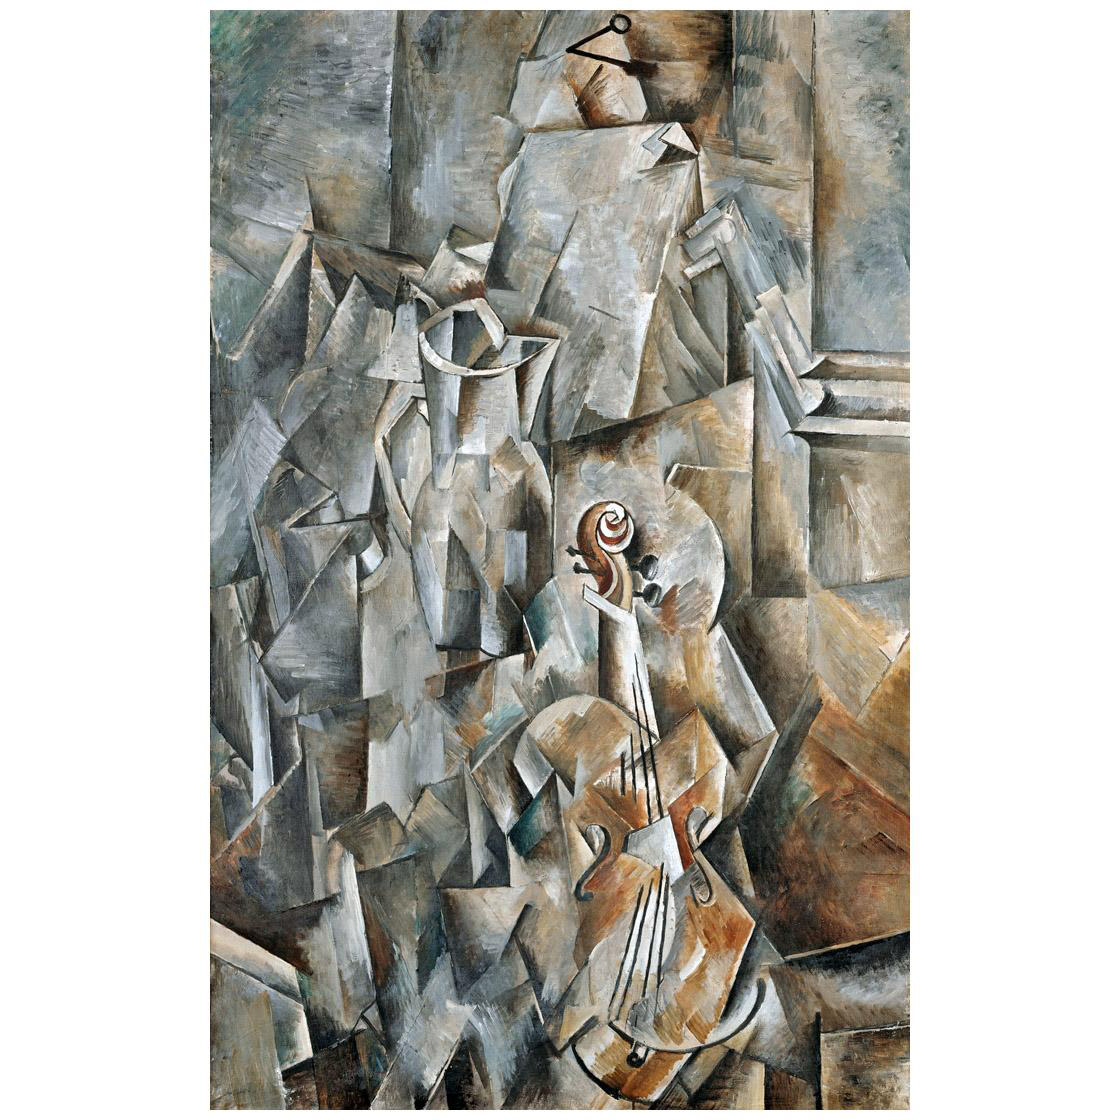 Georges Braque. Pichet et violon. 1910. Kunstmuseum Basel